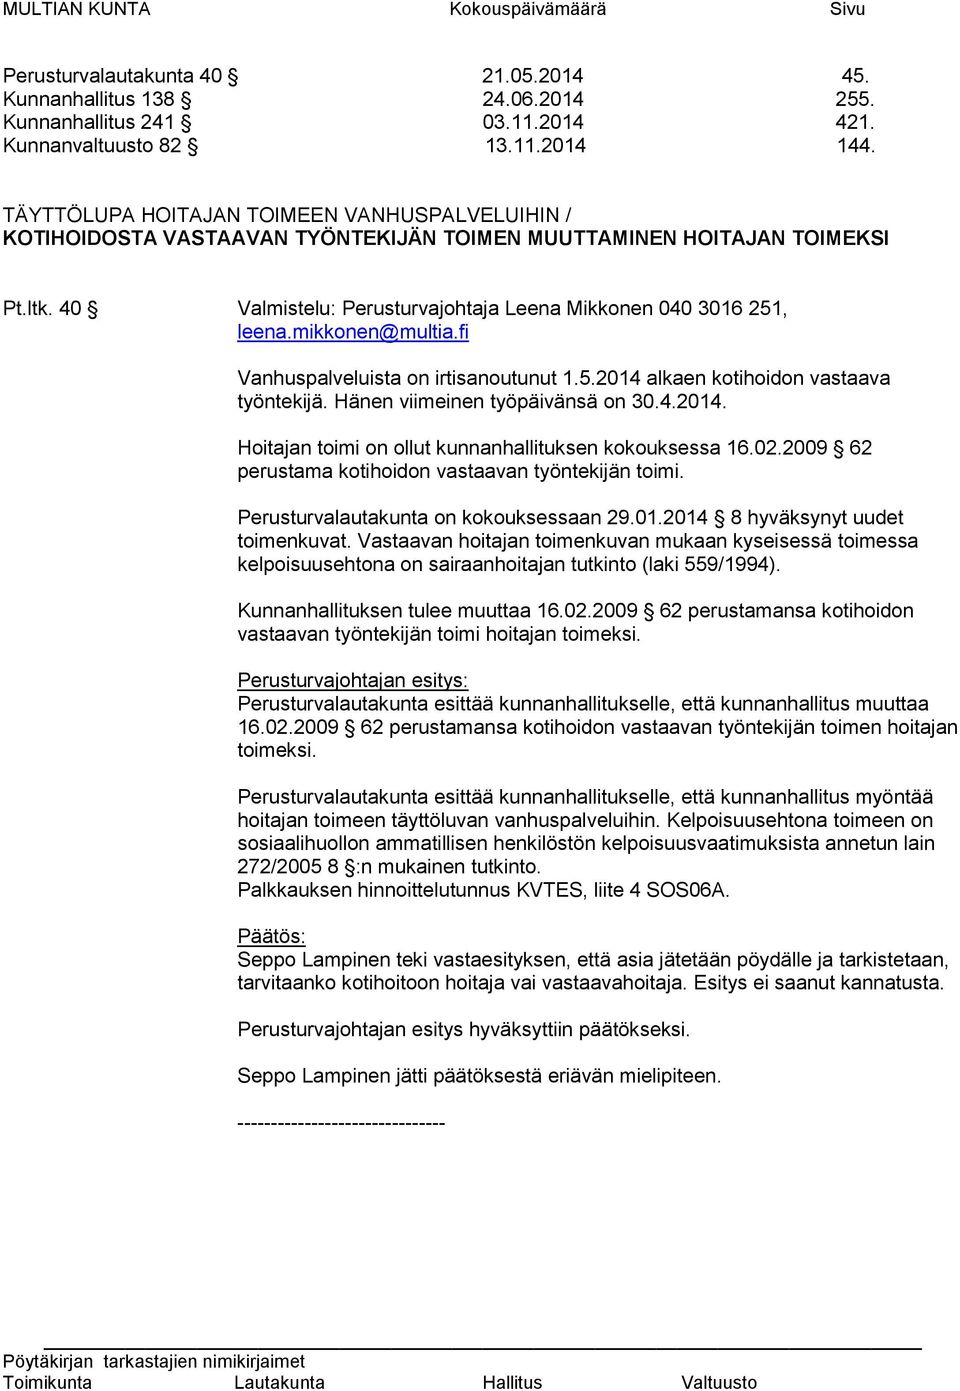 mikkonen@multia.fi Vanhuspalveluista on irtisanoutunut 1.5.2014 alkaen kotihoidon vastaava työntekijä. Hänen viimeinen työpäivänsä on 30.4.2014. Hoitajan toimi on ollut kunnanhallituksen kokouksessa 16.